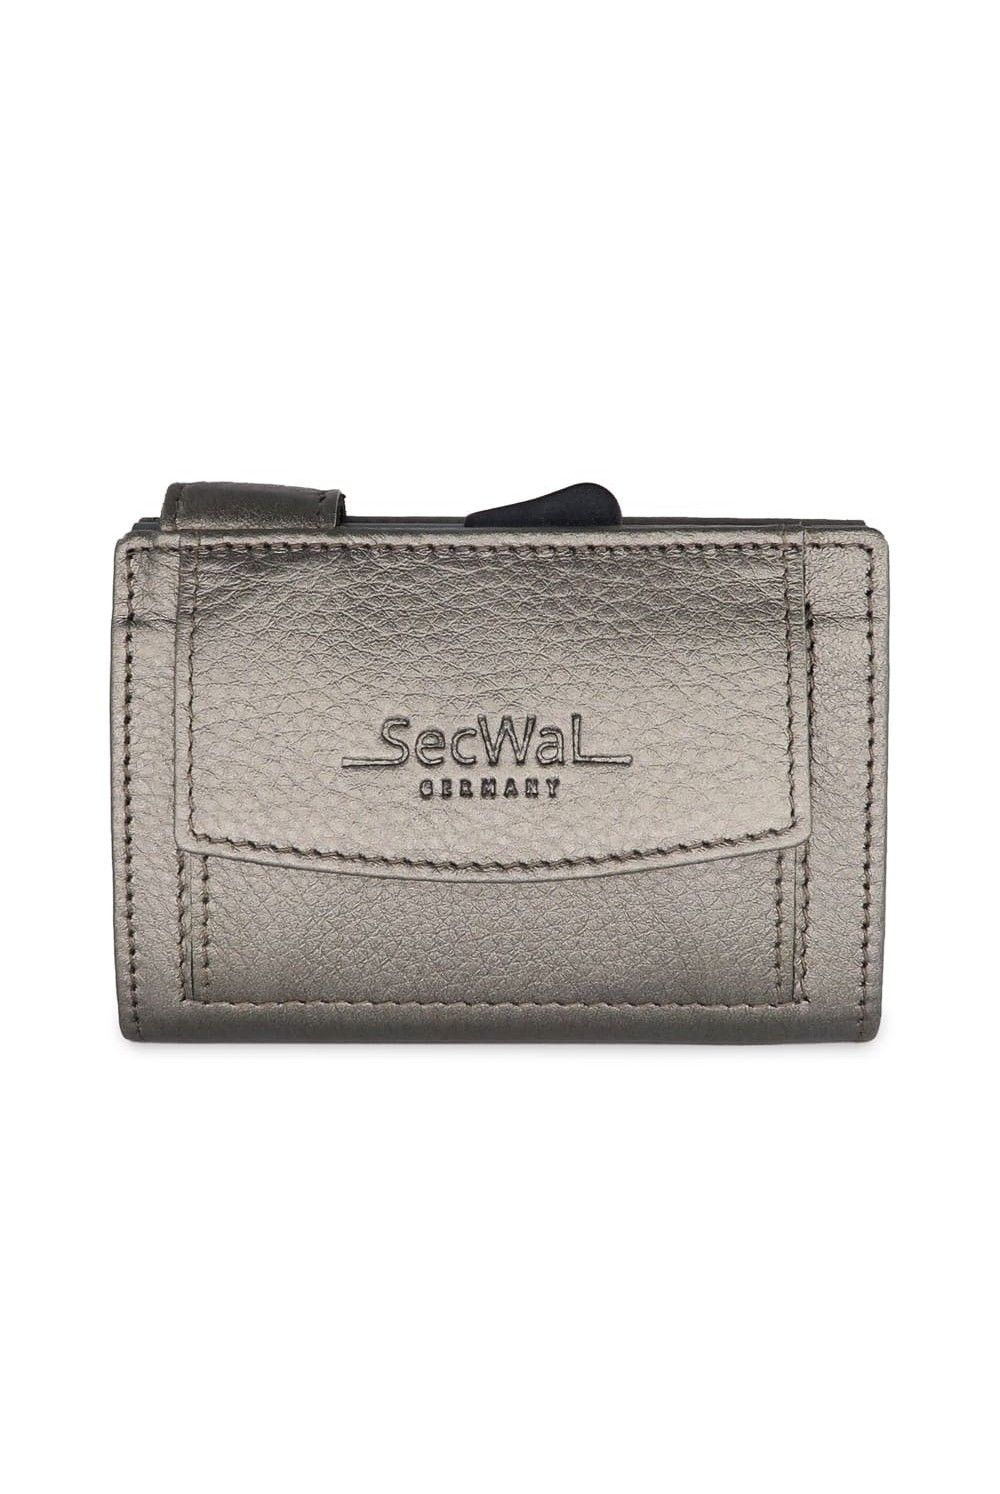 SecWal Card Case DK Leather Metallic grey